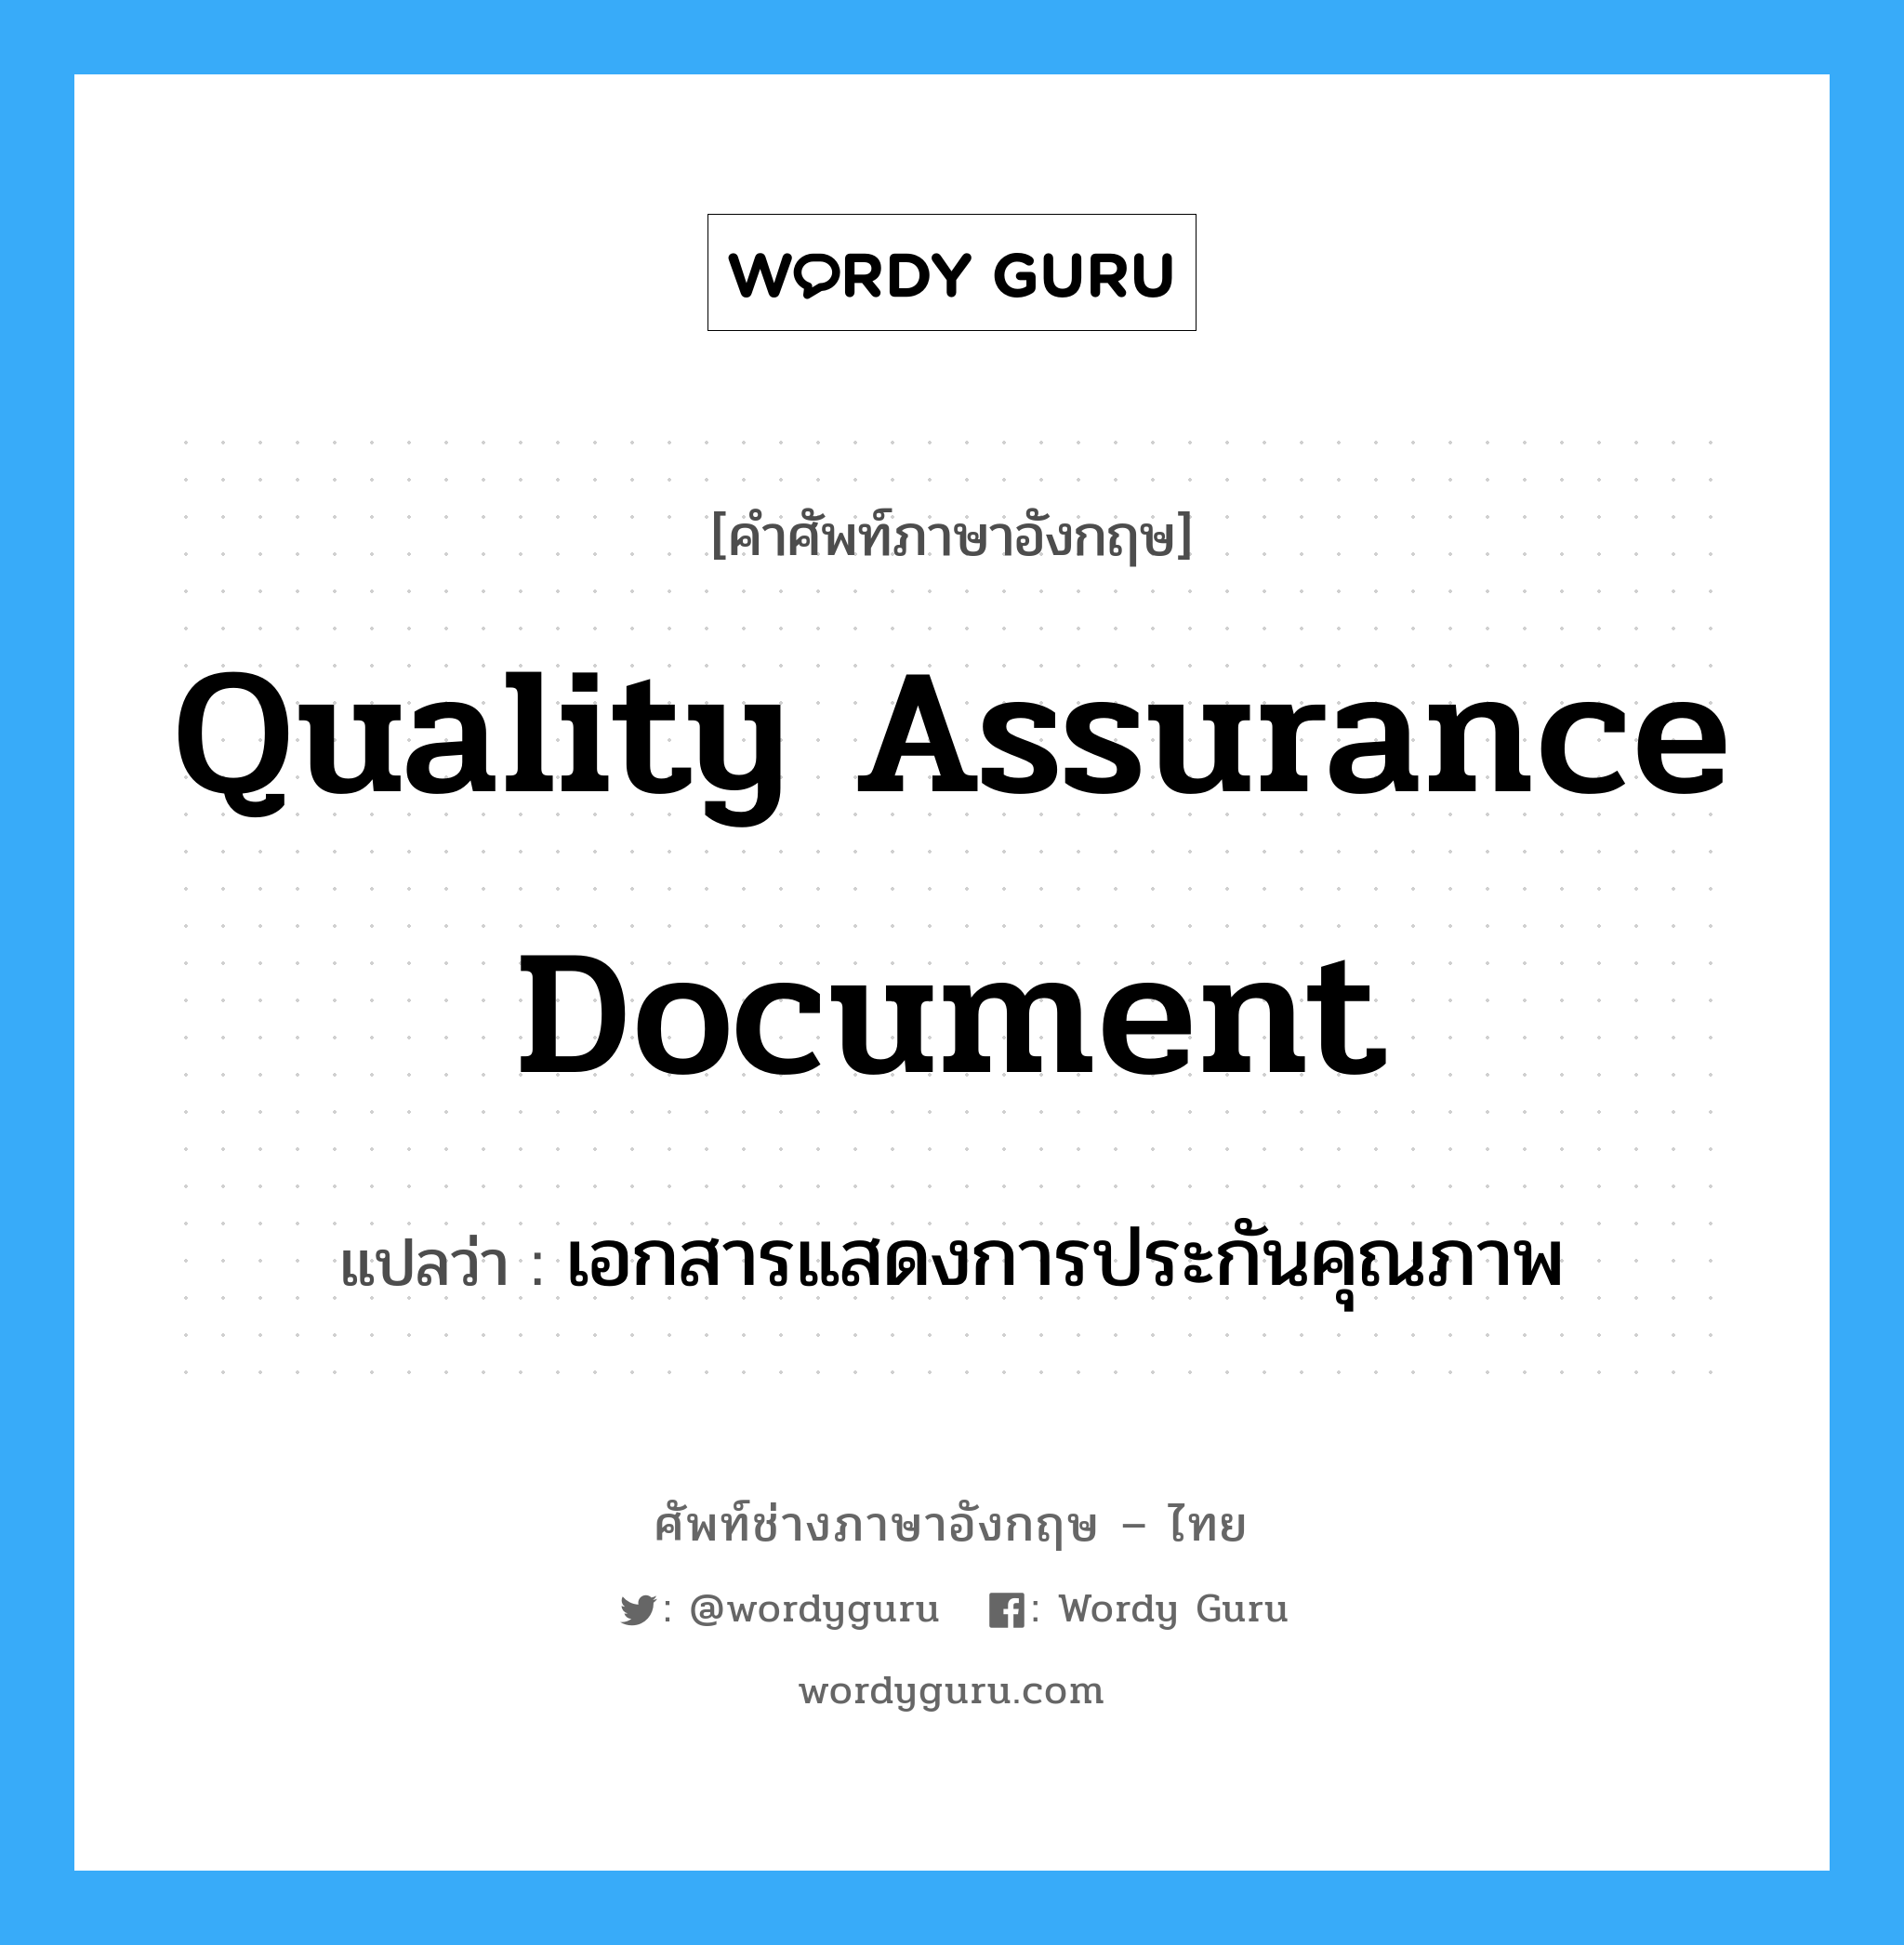 เอกสารแสดงการประกันคุณภาพ ภาษาอังกฤษ?, คำศัพท์ช่างภาษาอังกฤษ - ไทย เอกสารแสดงการประกันคุณภาพ คำศัพท์ภาษาอังกฤษ เอกสารแสดงการประกันคุณภาพ แปลว่า Quality assurance document